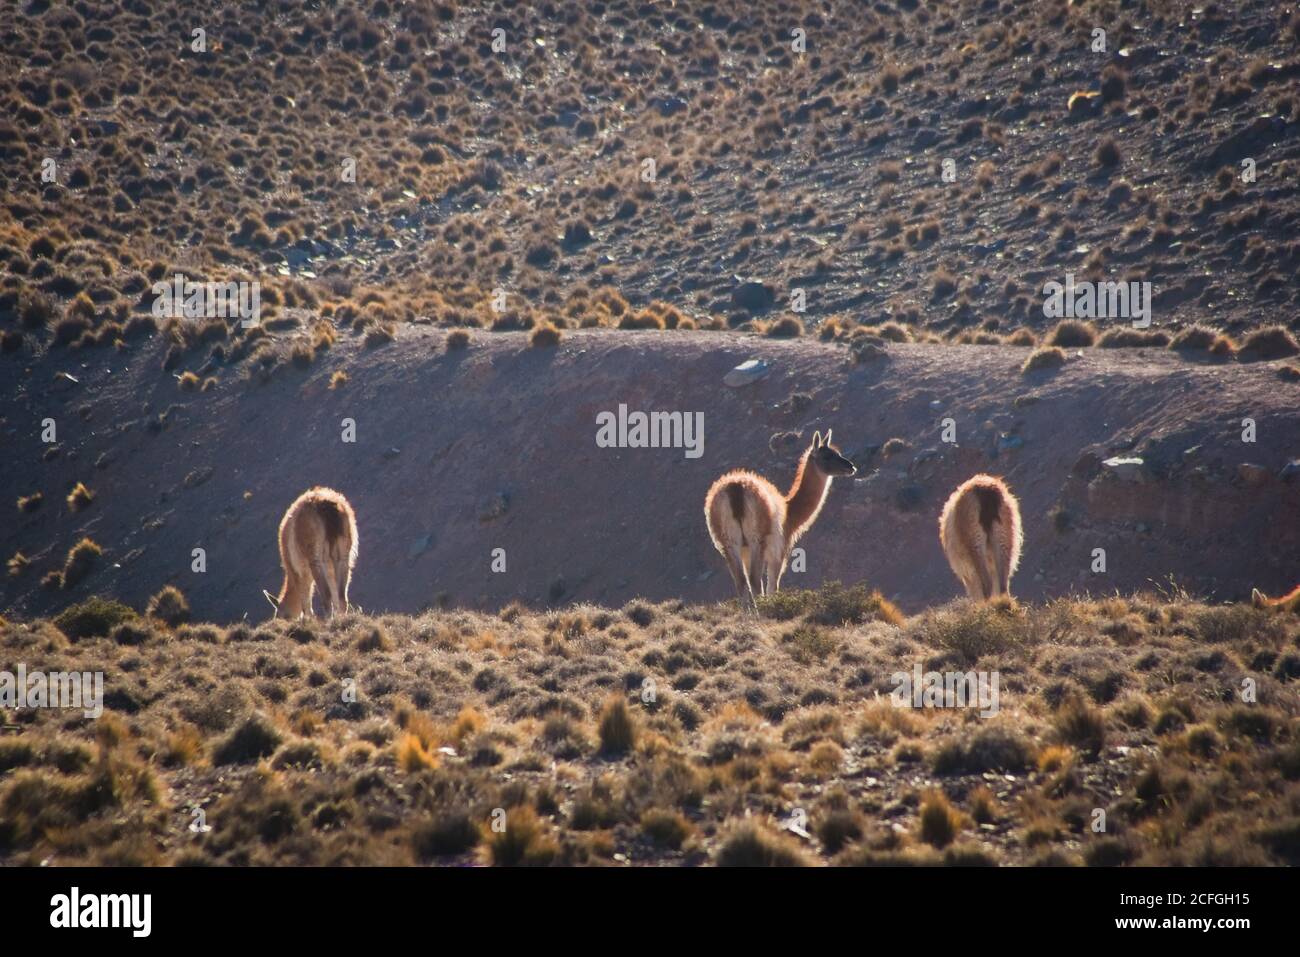 Jeunes guanacos (Lama guanicoe) repérés dans les steppes de la réserve naturelle de Villavicencio, à Mendoza, en Argentine. Banque D'Images